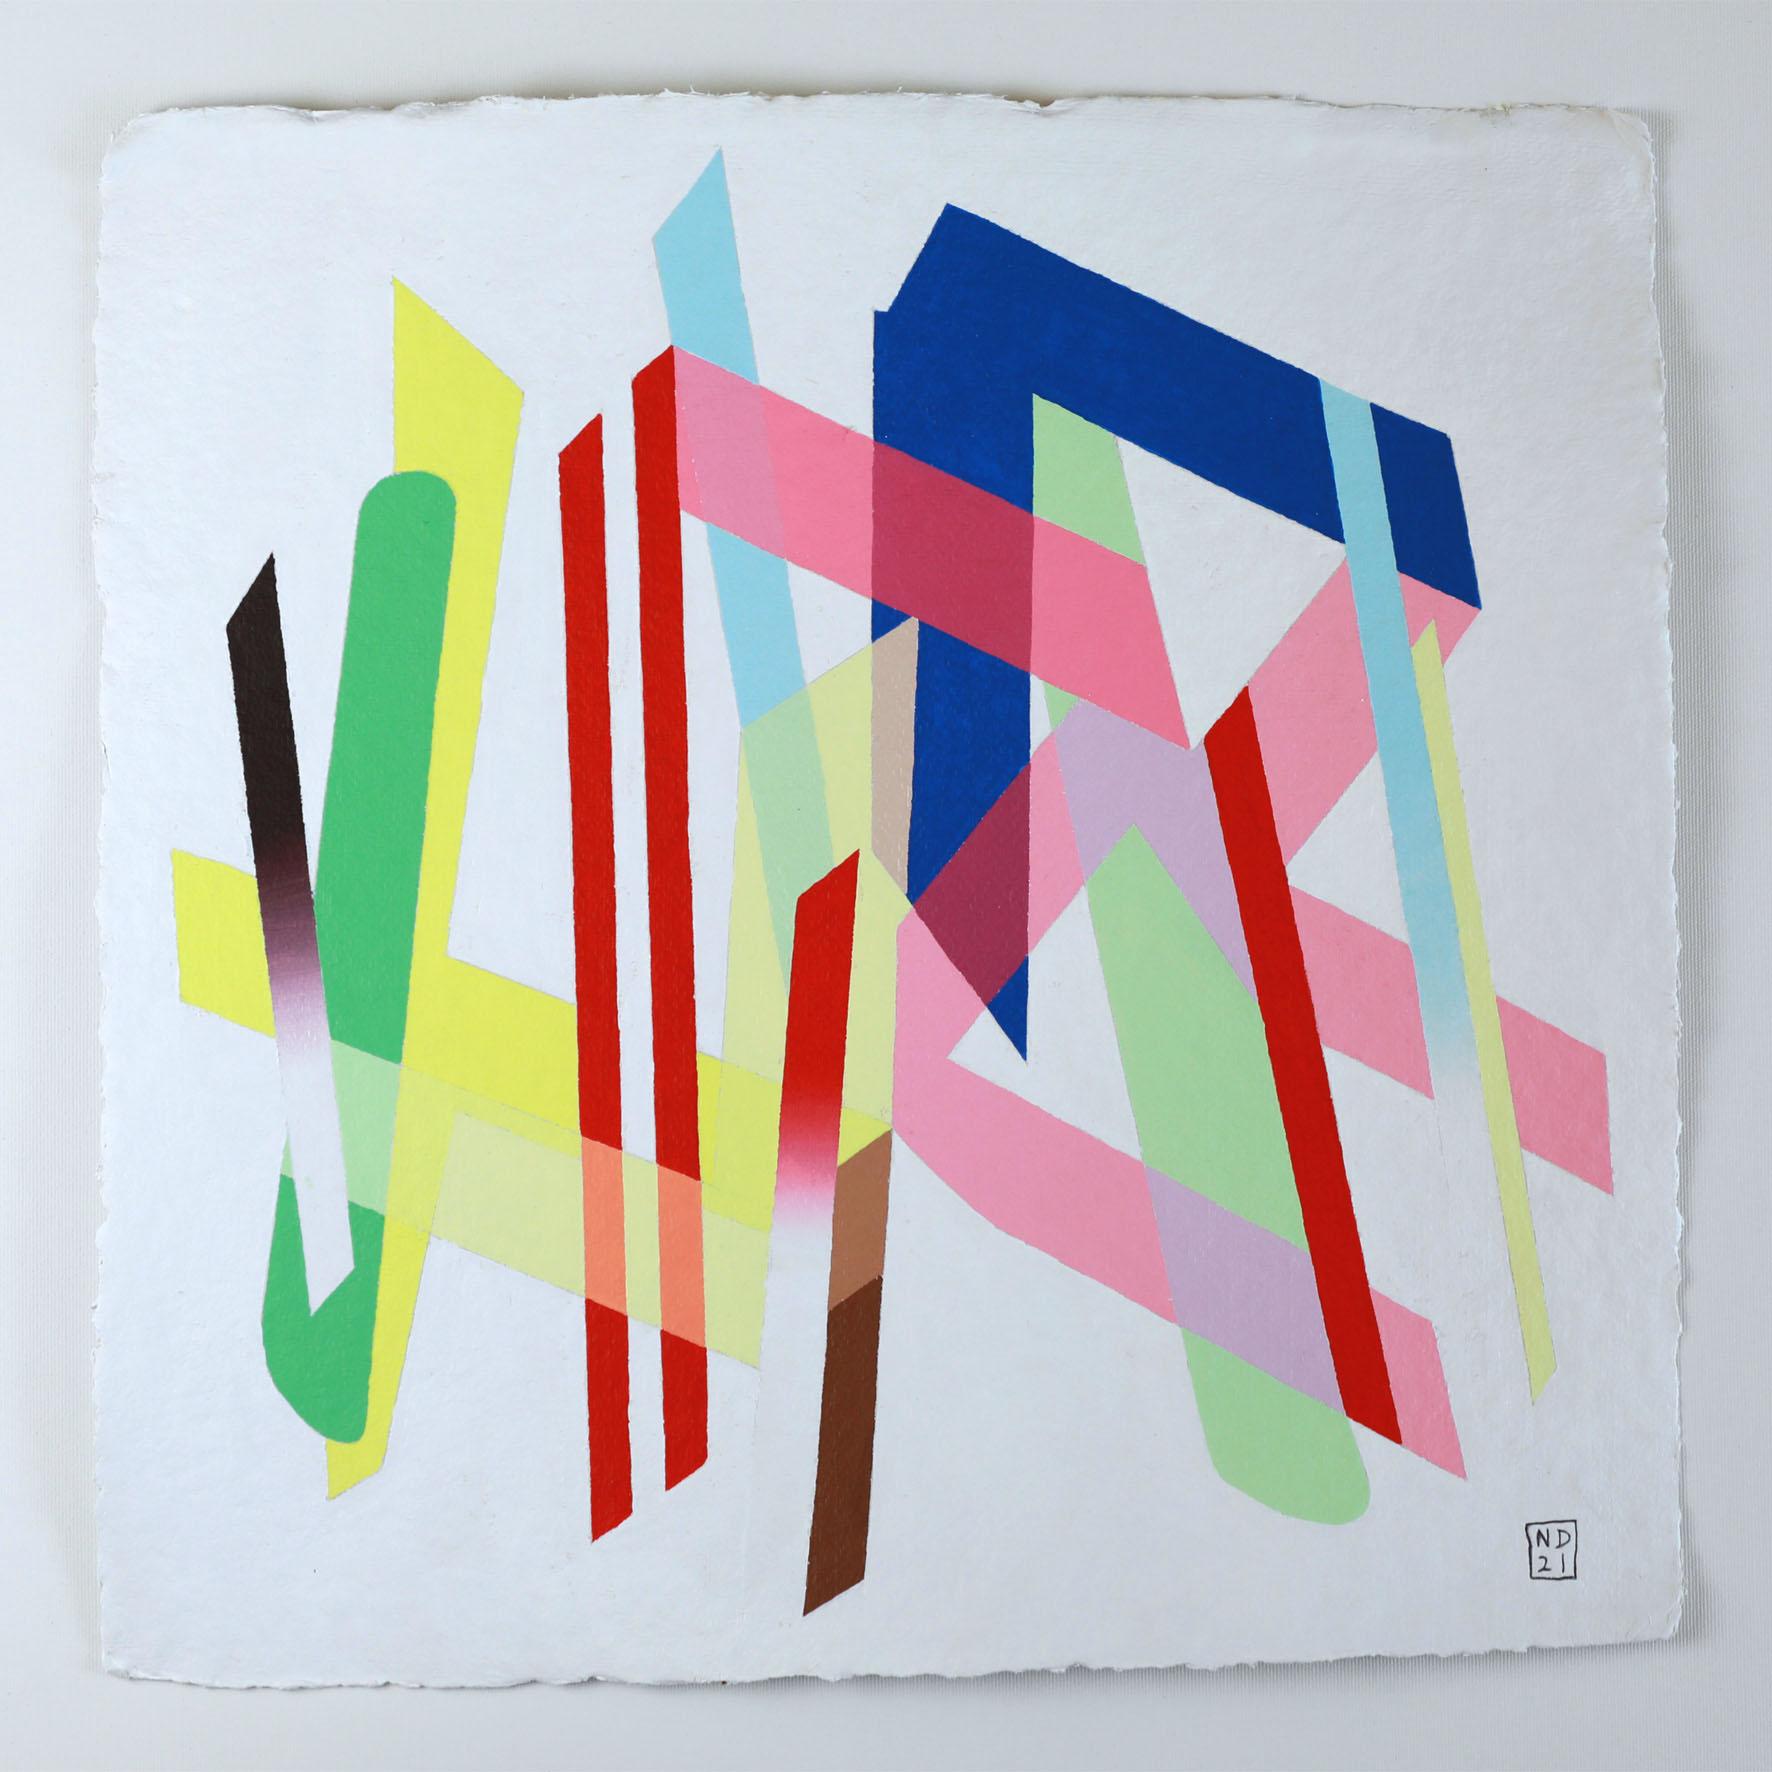 Abstraction colorée de Nicolas Dubreuille : "Ref. 611".

Nicolas Dubreuille est un artiste abstrait aux multiples facettes qui aime multiplier les médiums - sculpture, peinture, dessin, photographie - pour explorer la forme et la couleur. Ses œuvres